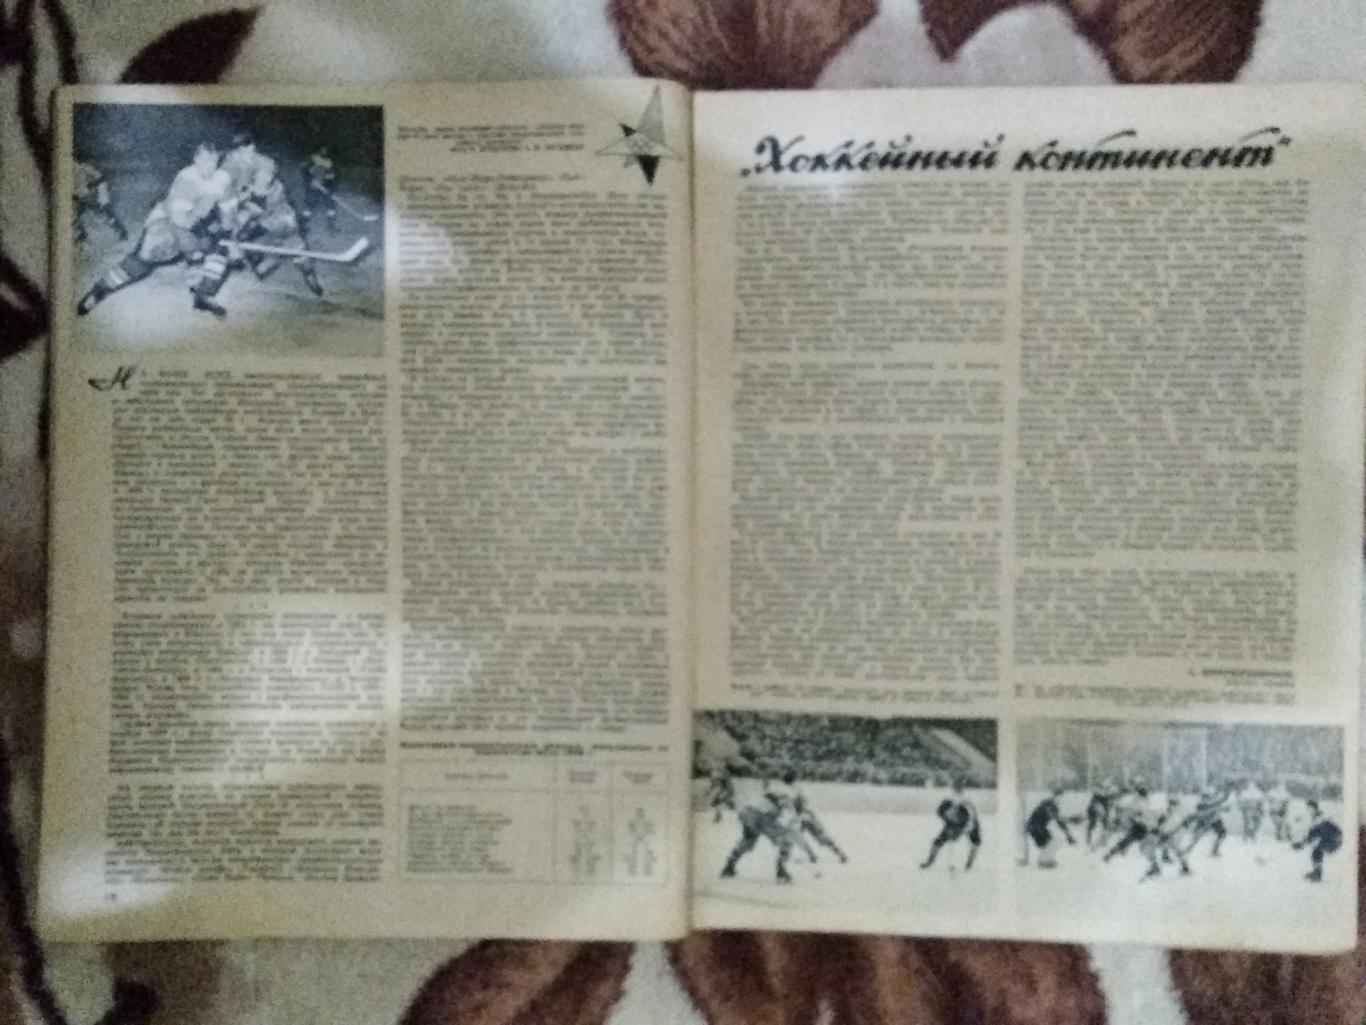 Журнал.Физкультура и спорт № 1 1960 г. (ФиС). 1